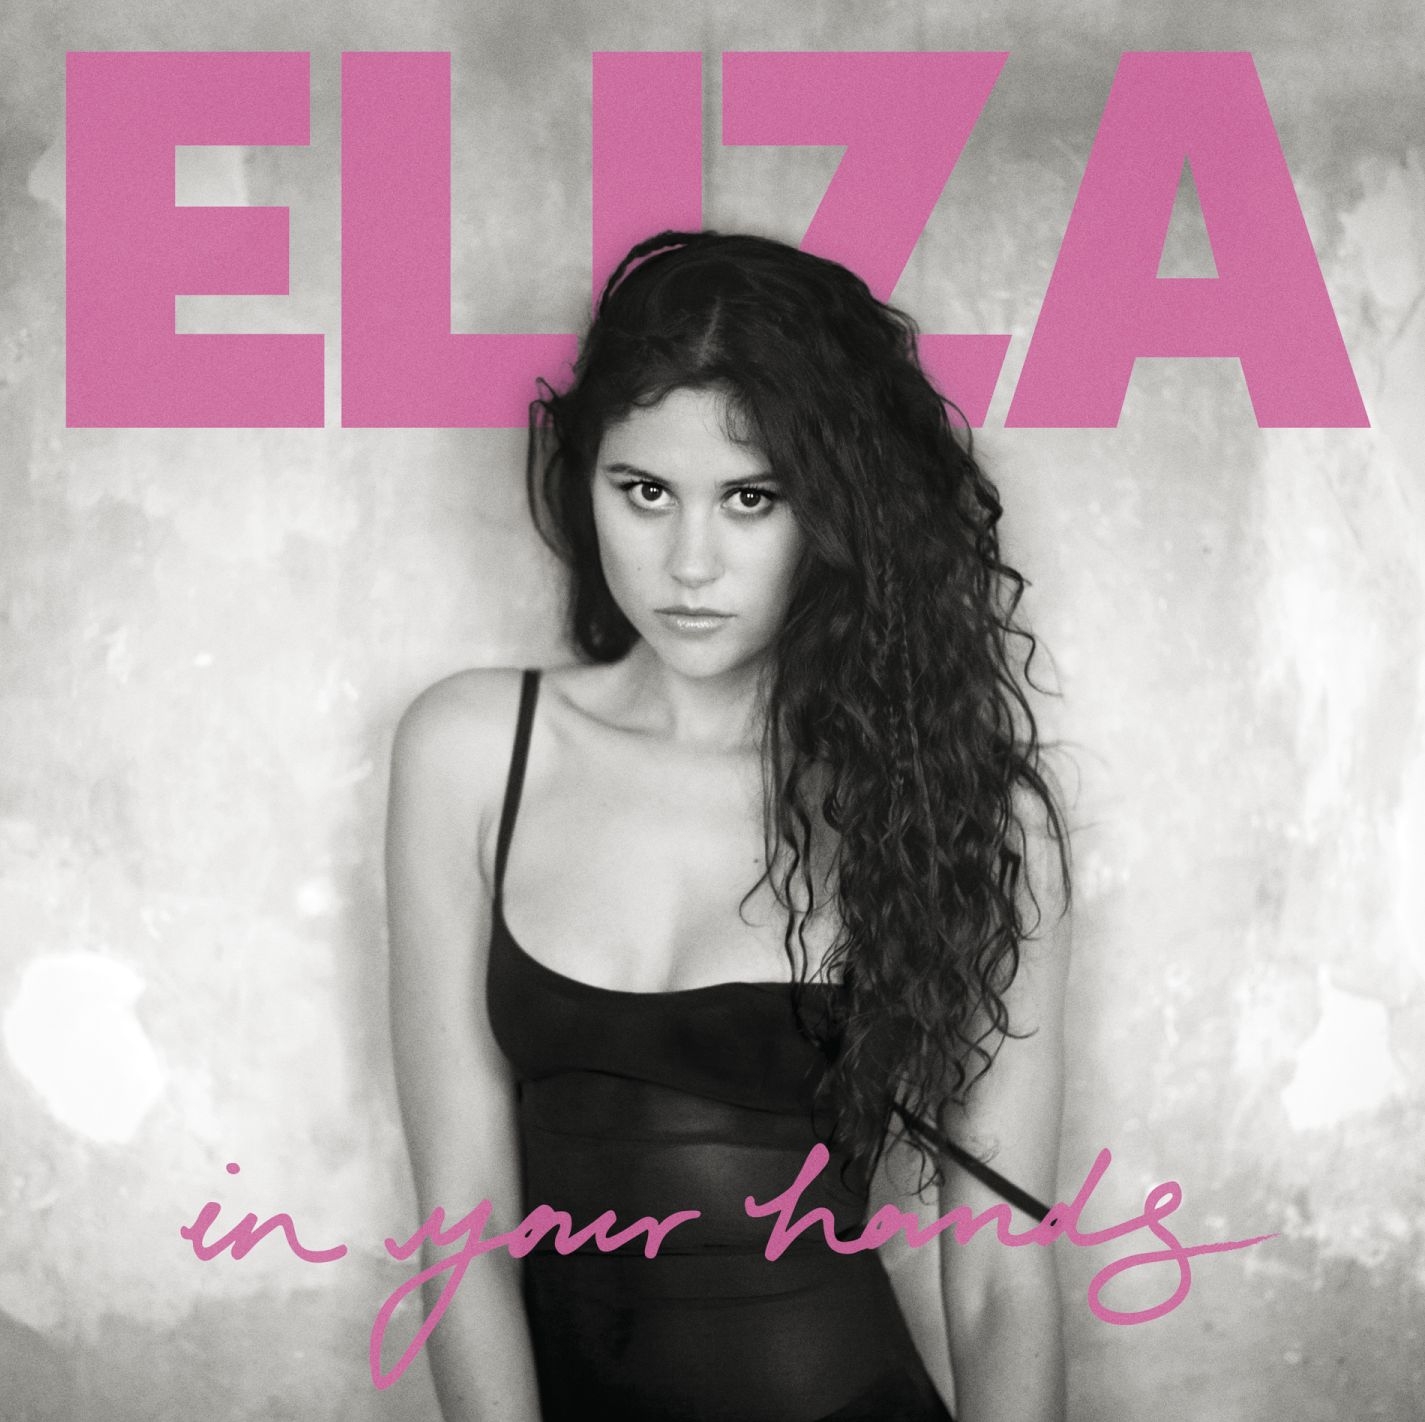 “In your hands”il nuovo album di Eliza Doolittleil